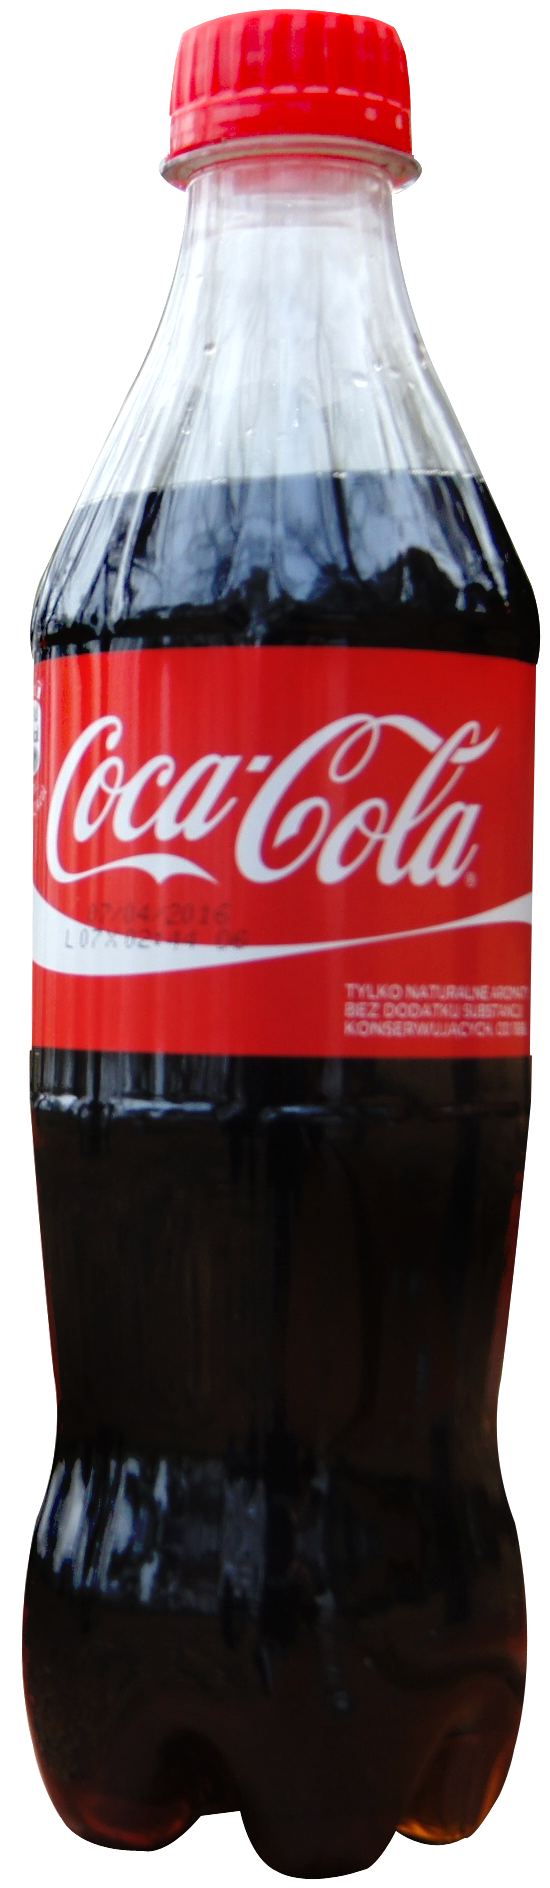 Finance Cola Coca Manioc Soda PNG